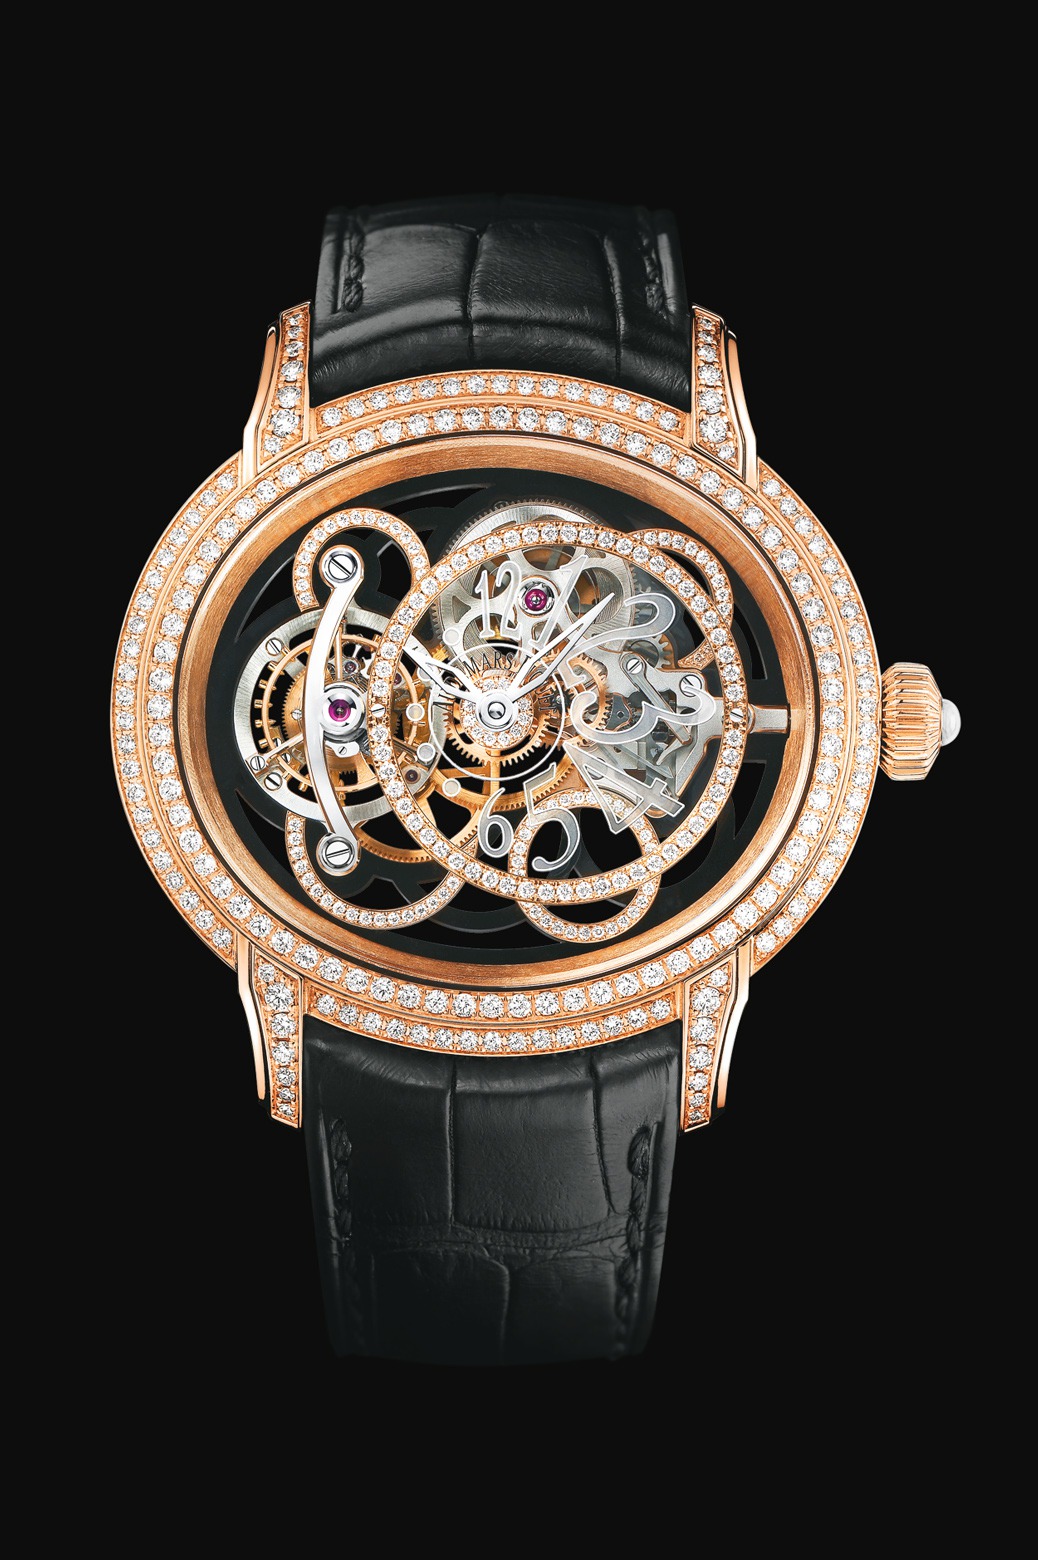 Audemars Piguet Millenary Onyx Tourbillon Pink Gold watch REF: 26354OR.ZZ.D002CR.01